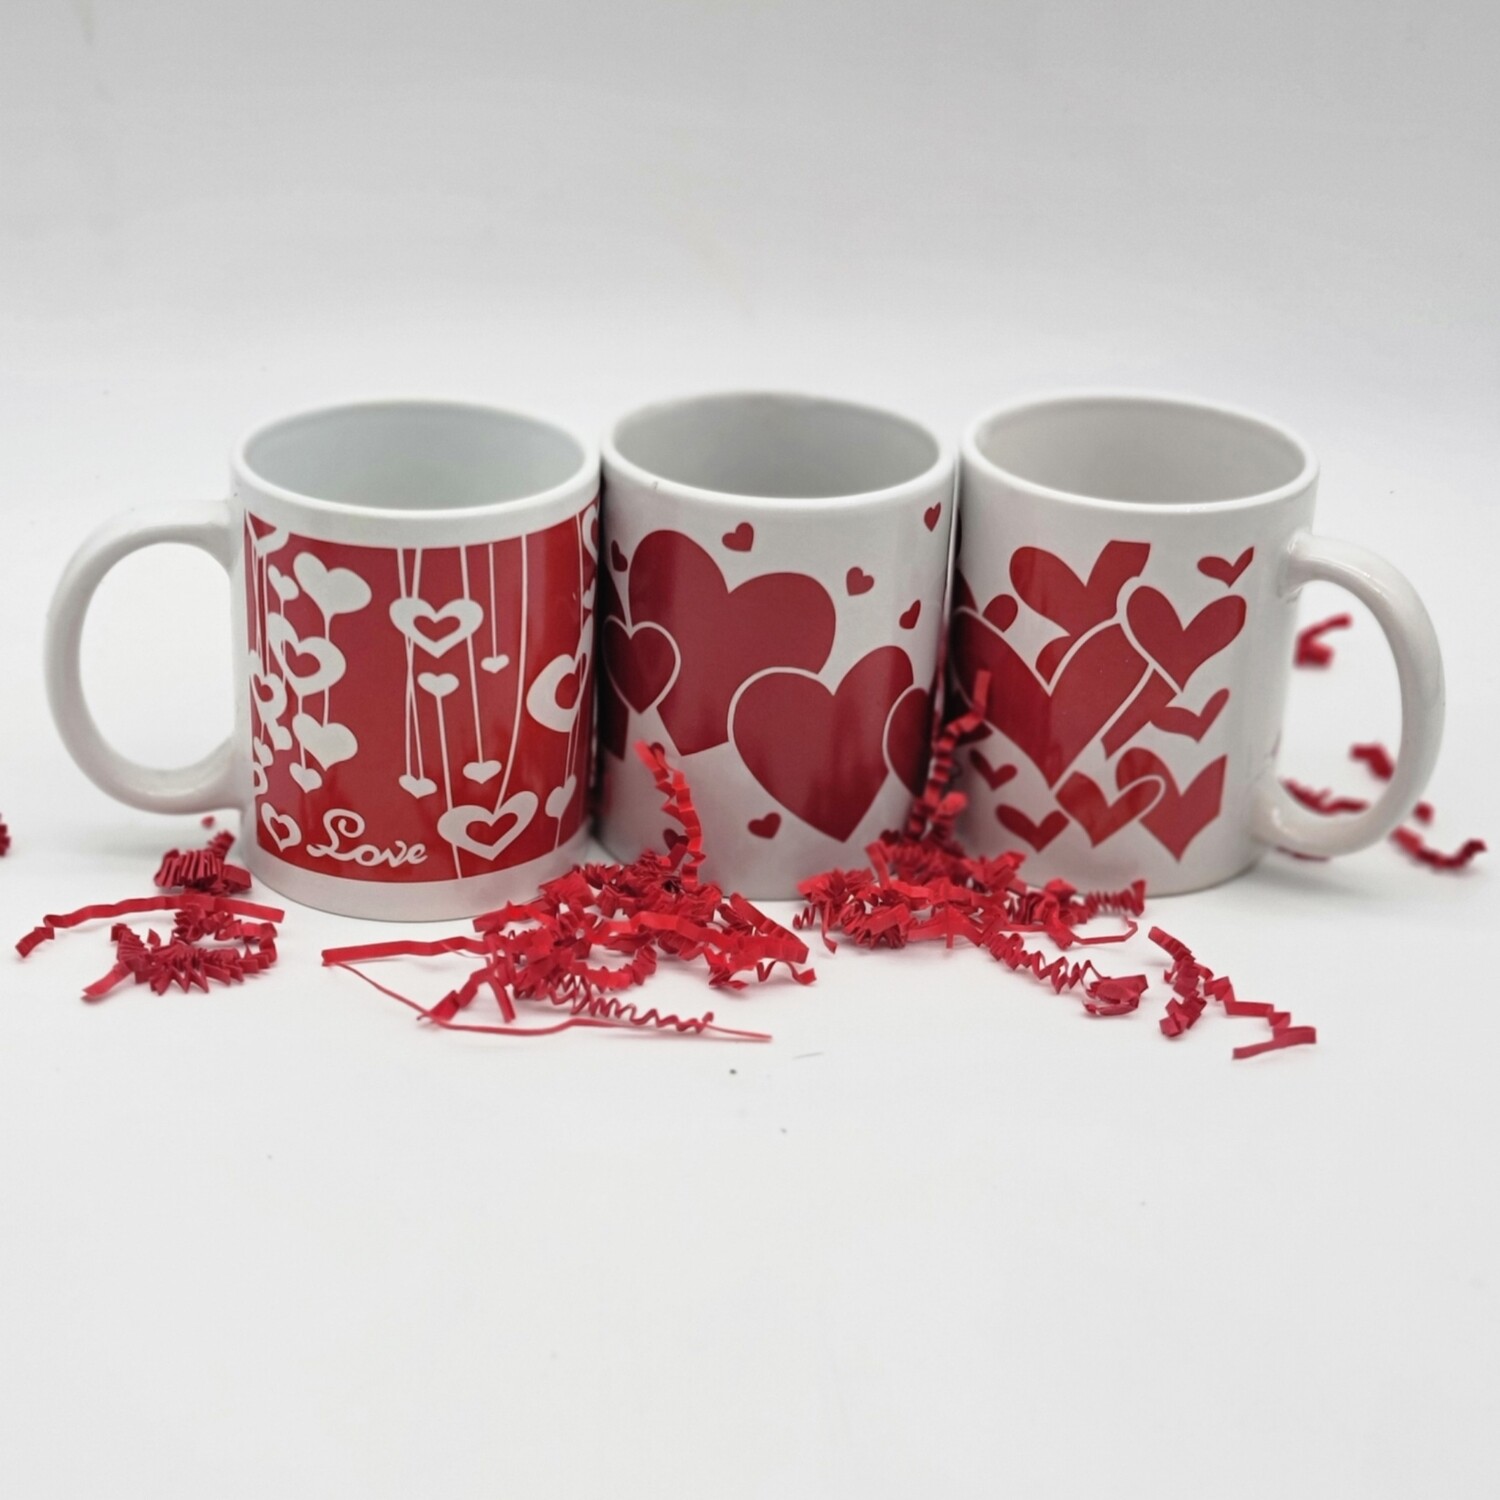 Love mugs